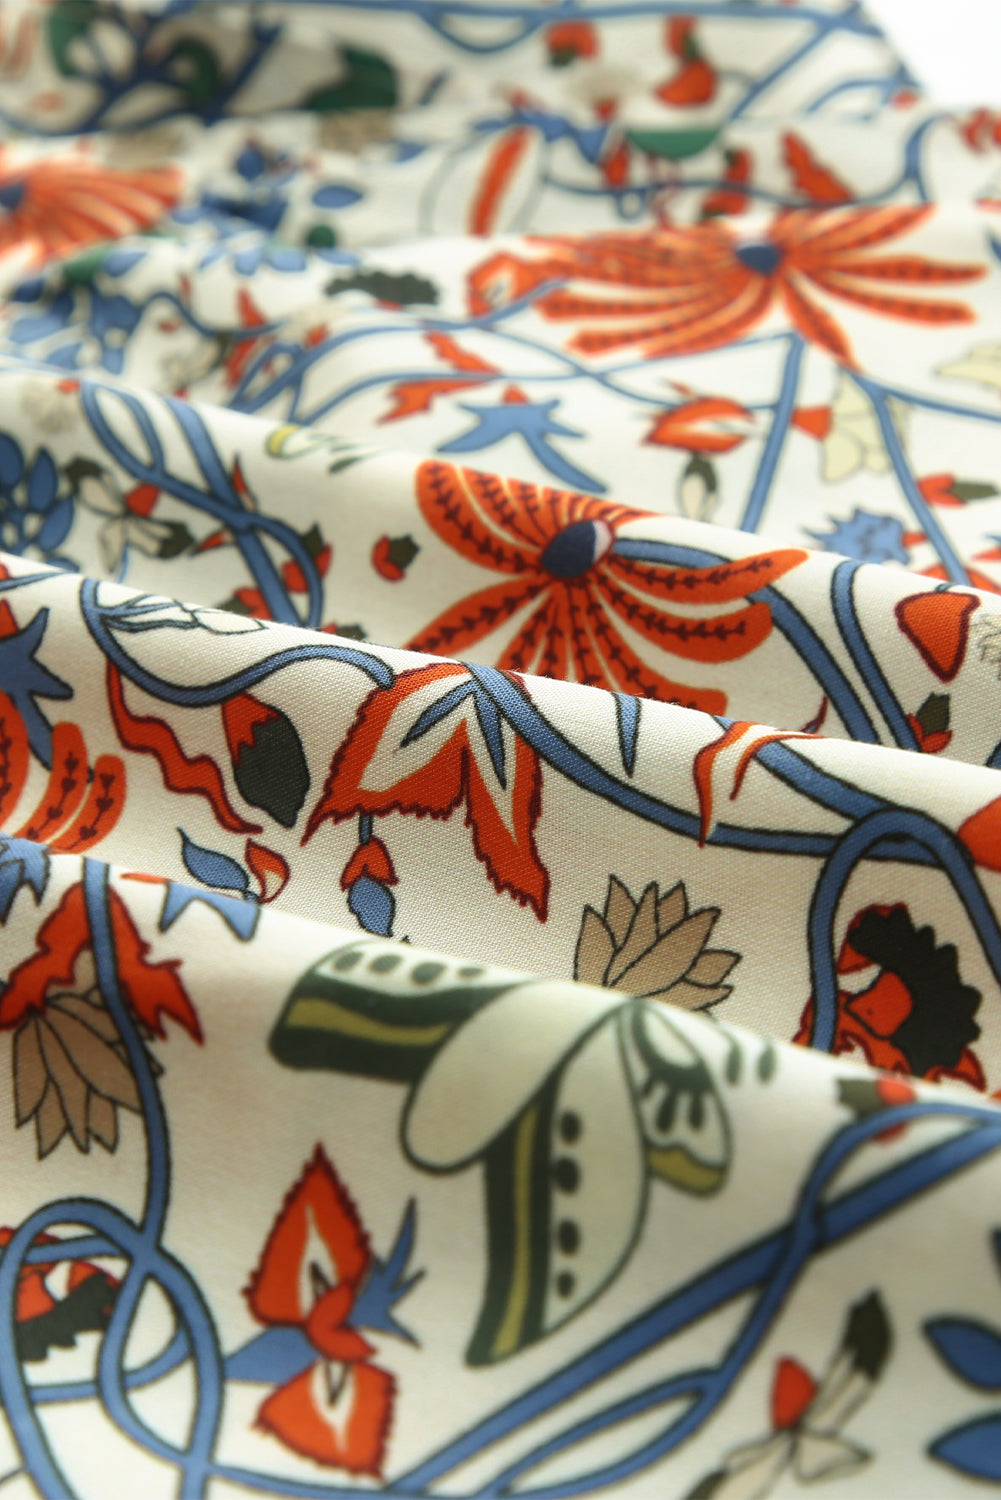 Mehrfarbige Vintage-Bluse mit gerafften Rüschenärmeln und Blumenmuster